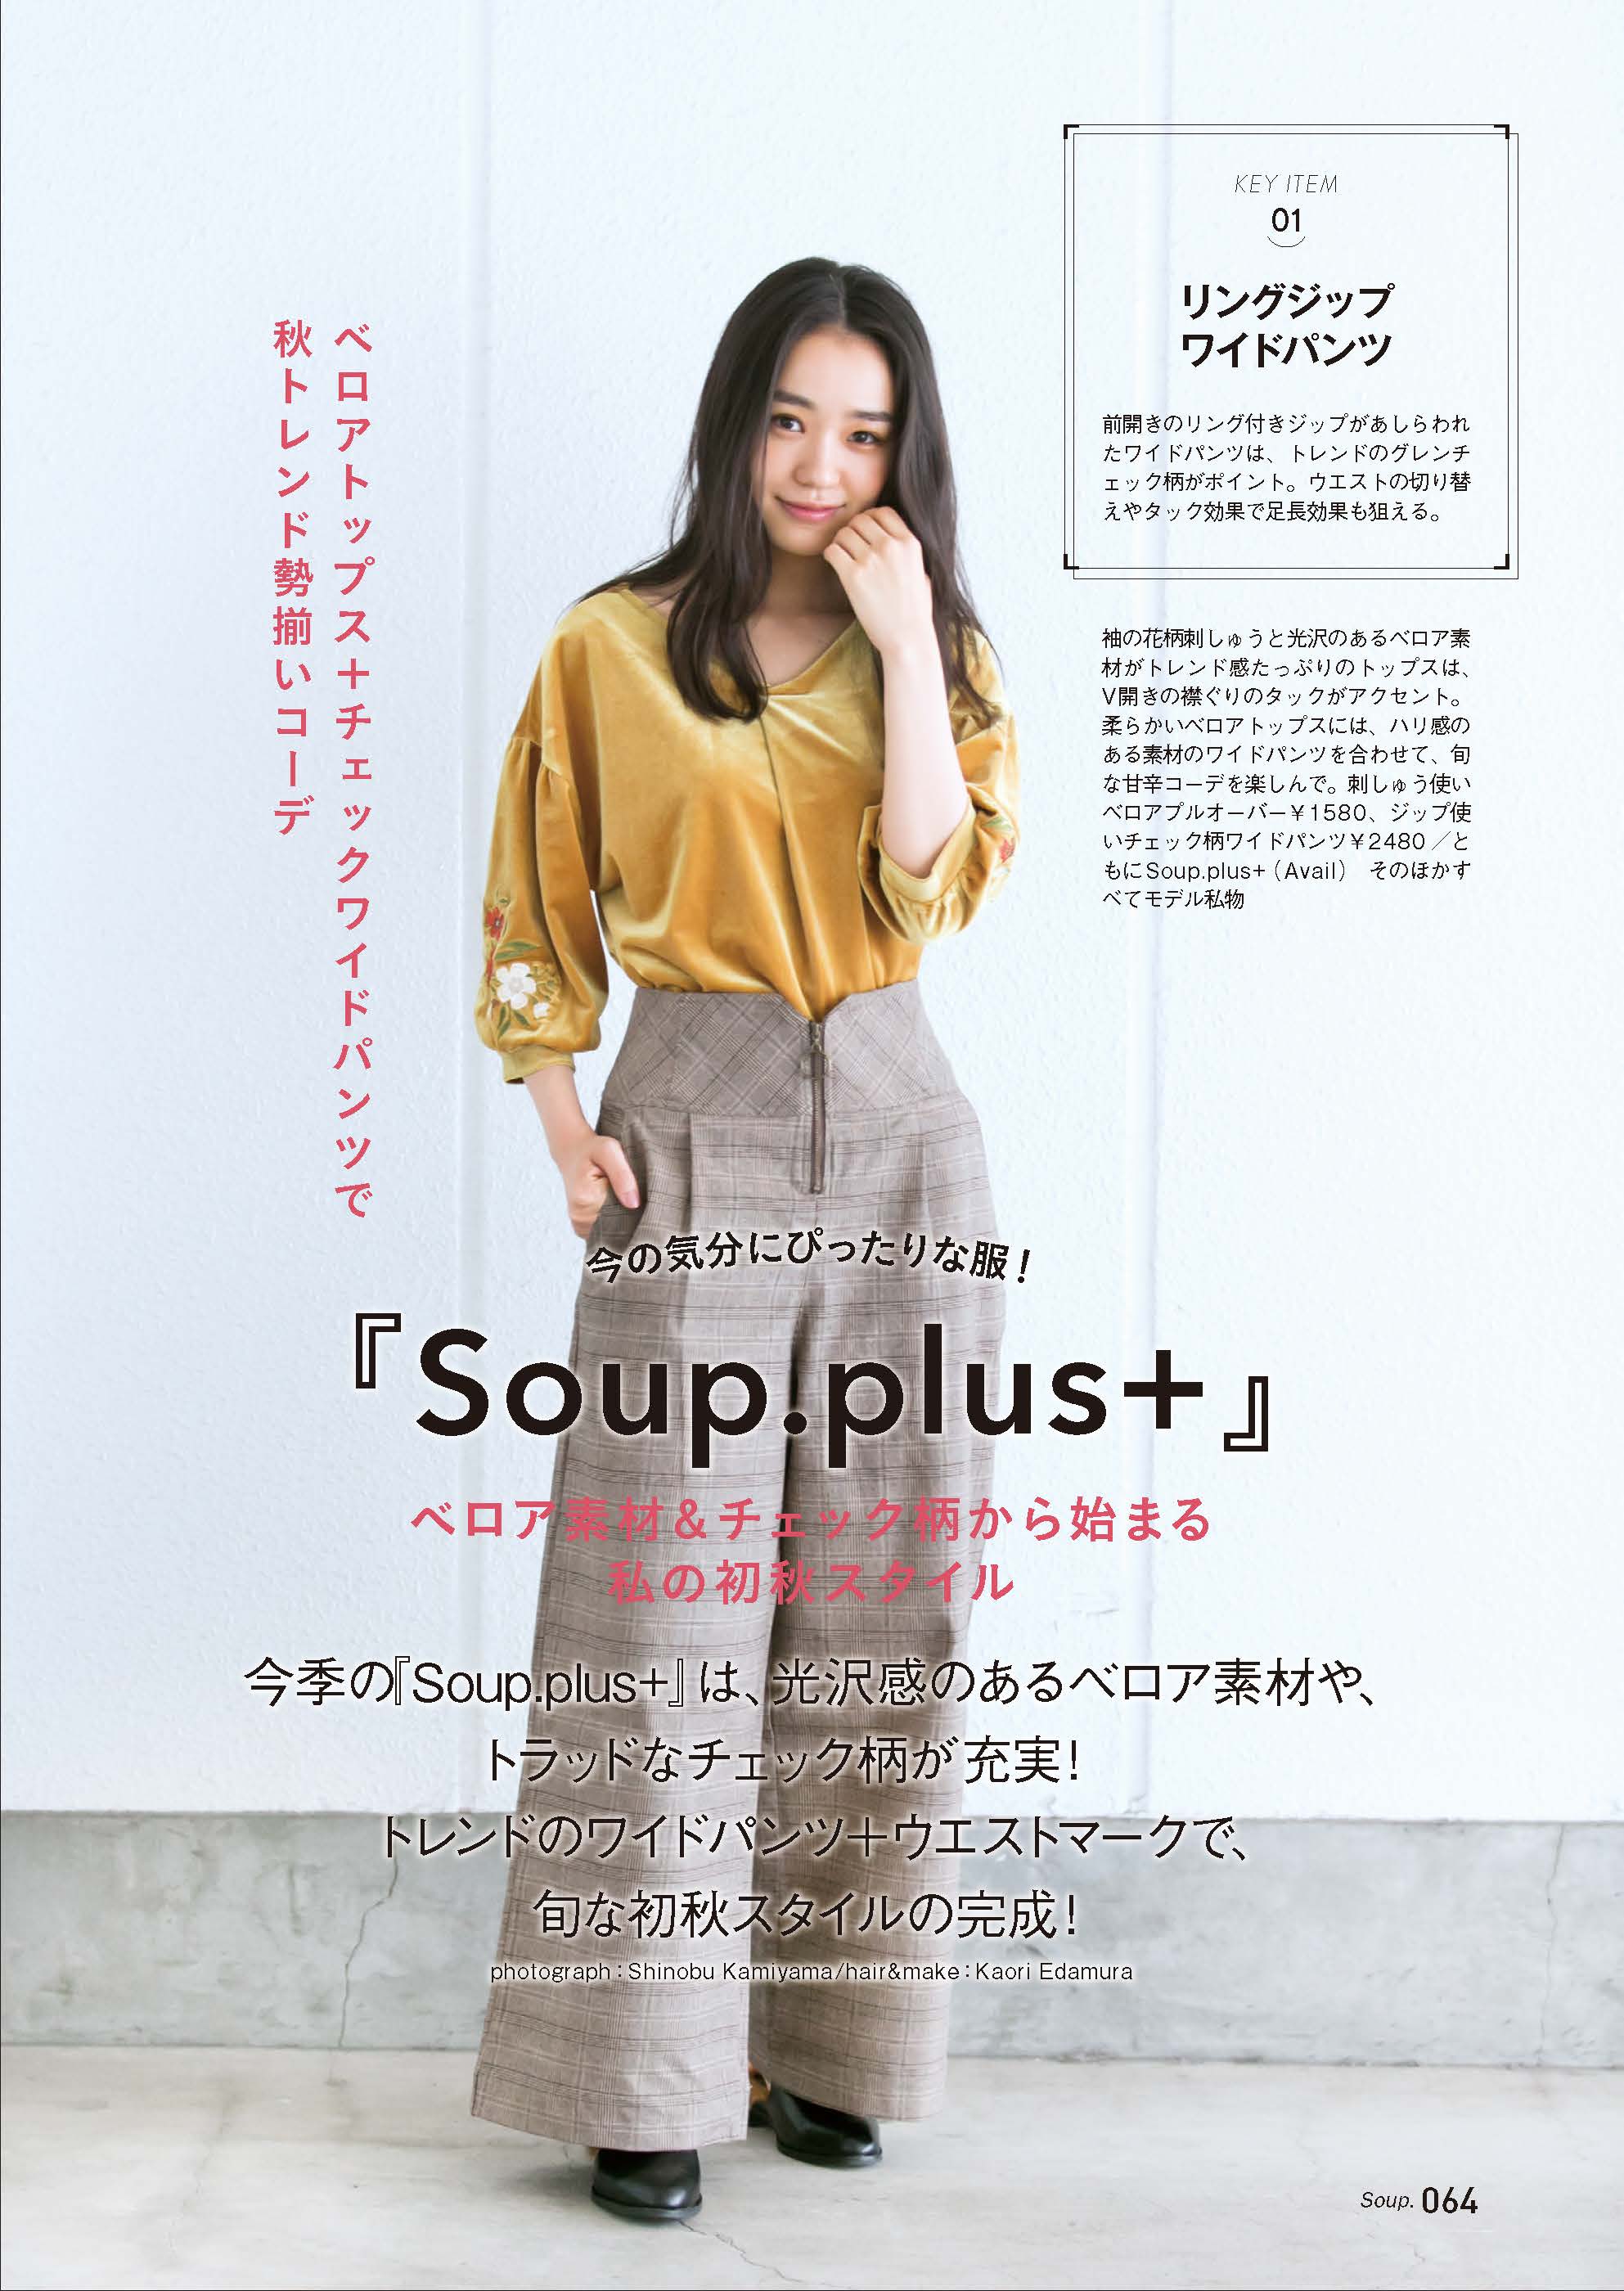 『Soup.plus+』で作るベロア＆チェック柄の初秋スタイル